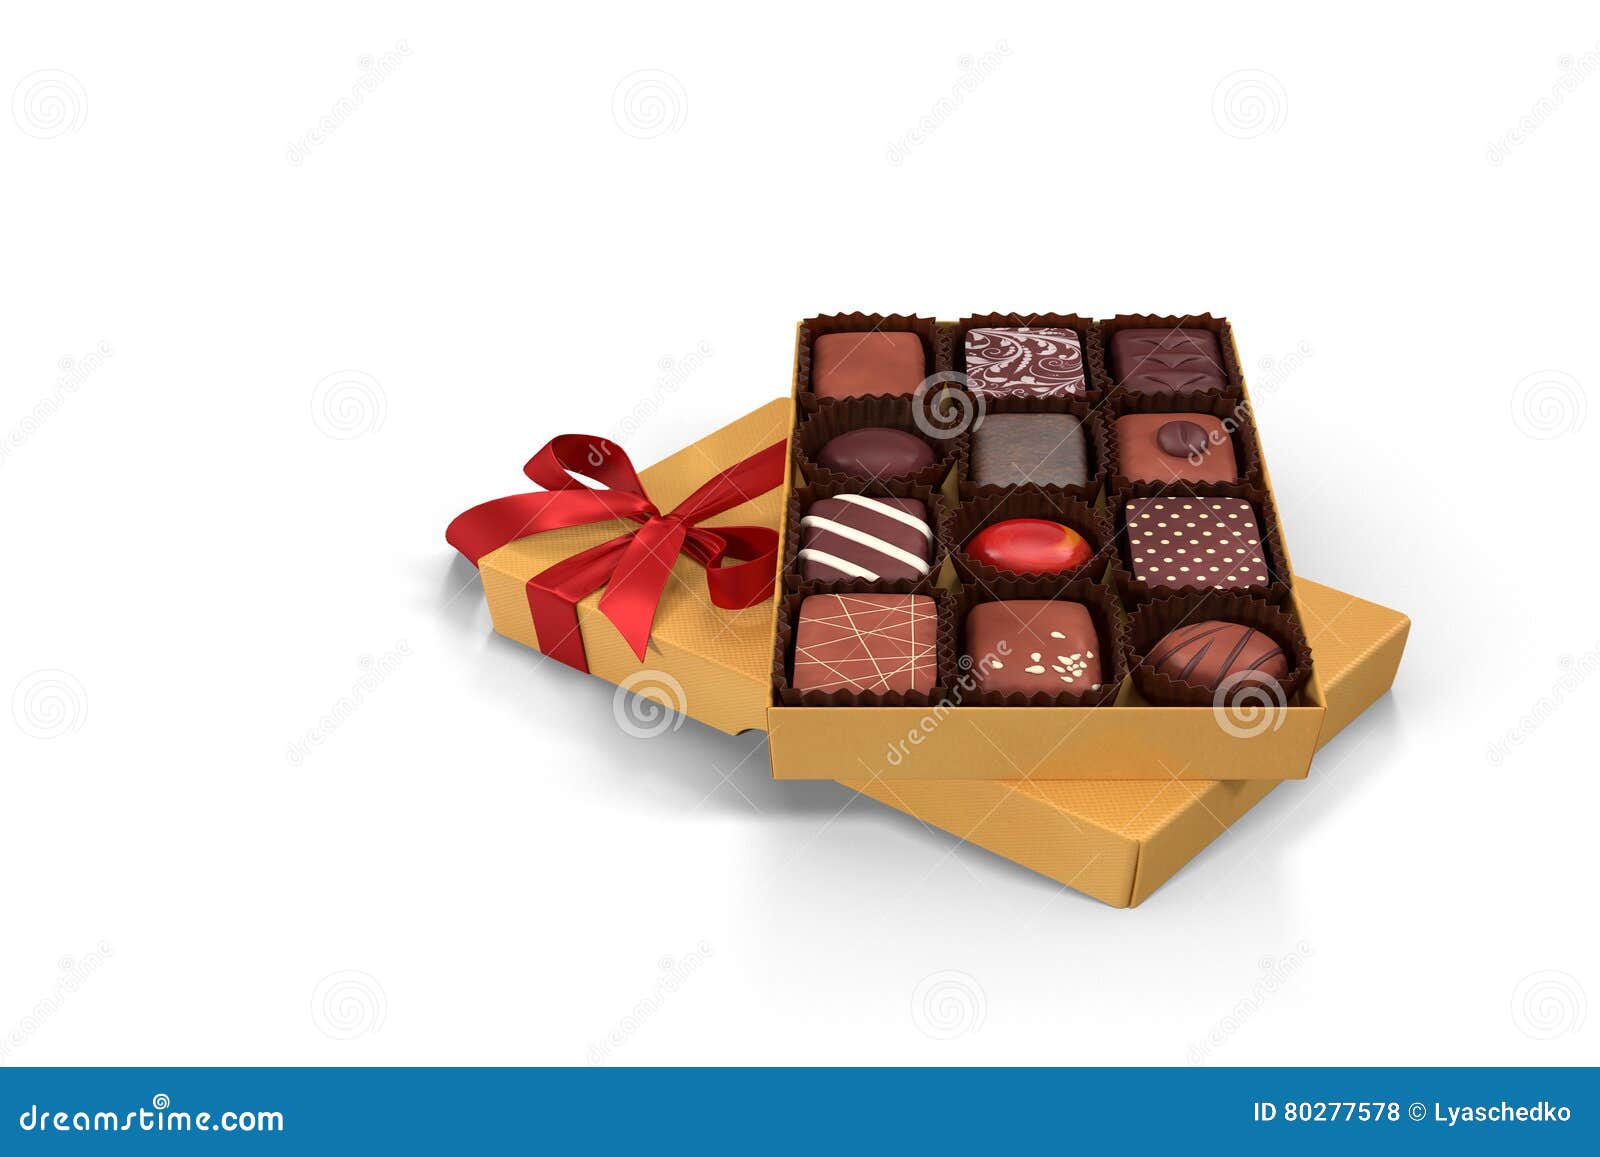 Regali Di Cioccolato Per Natale.Illustrazione 3d Una Scatola Di Cioccolato Regalo Di Festa Fotografia Stock Immagine Di Feste Anniversario 80277578